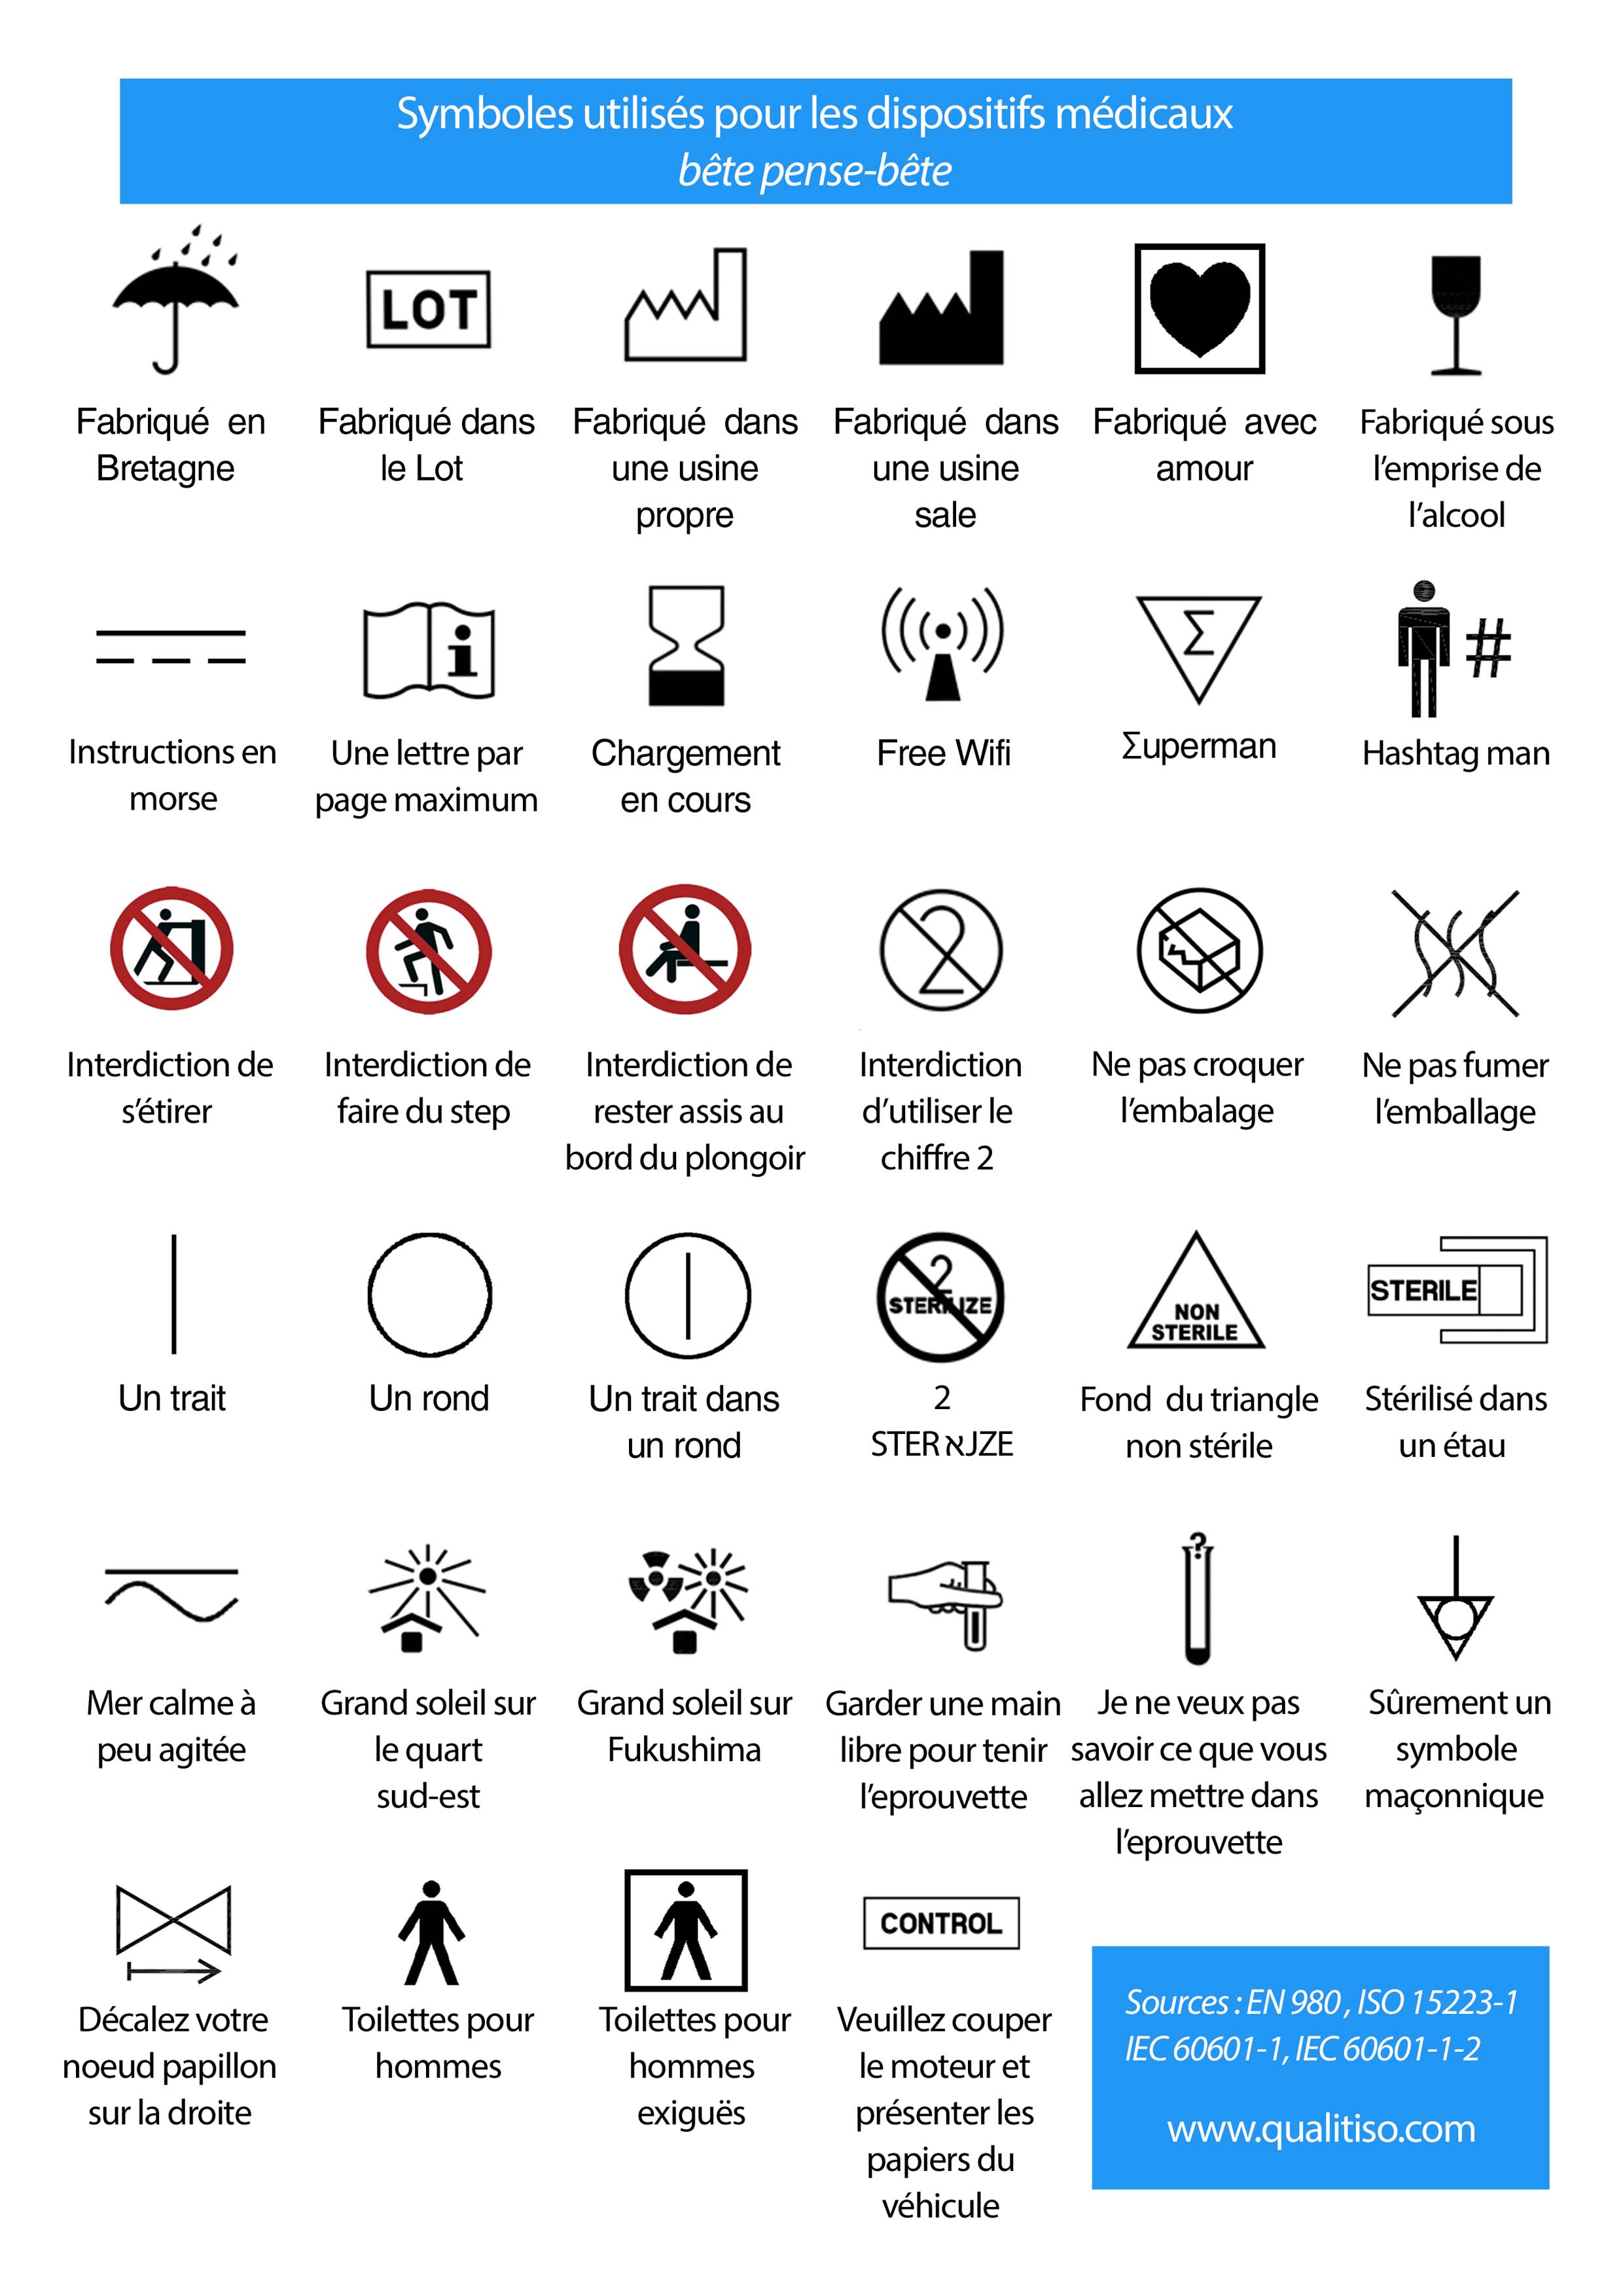 symboles pour les DM